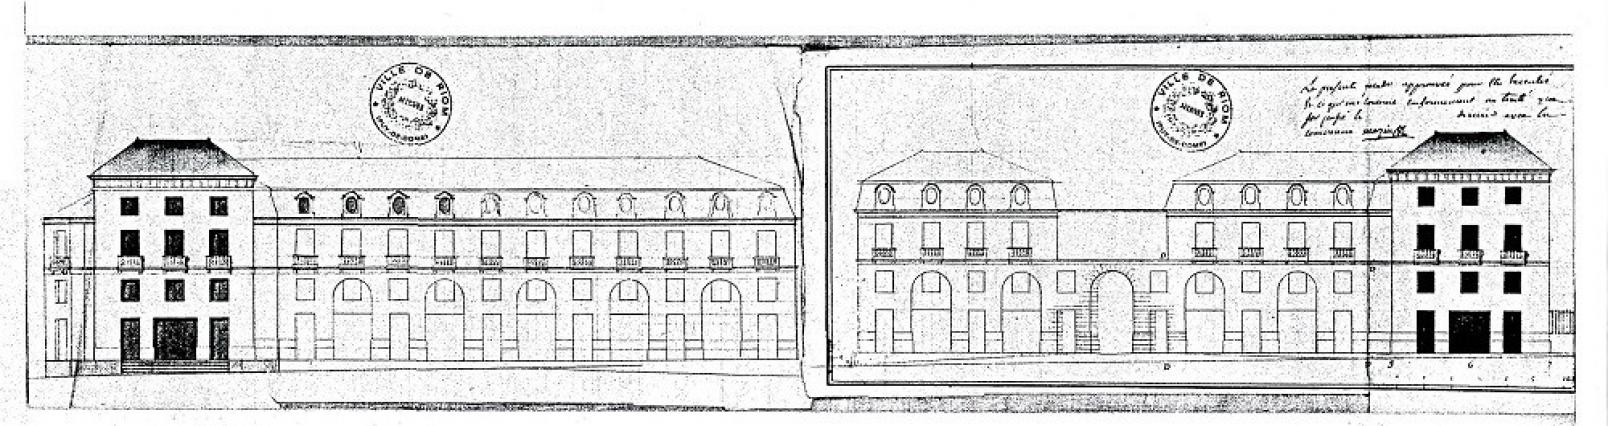 Élévations de la place du Marché-Neuf, 1795, dessin, C.F.M. Attiret, Riom